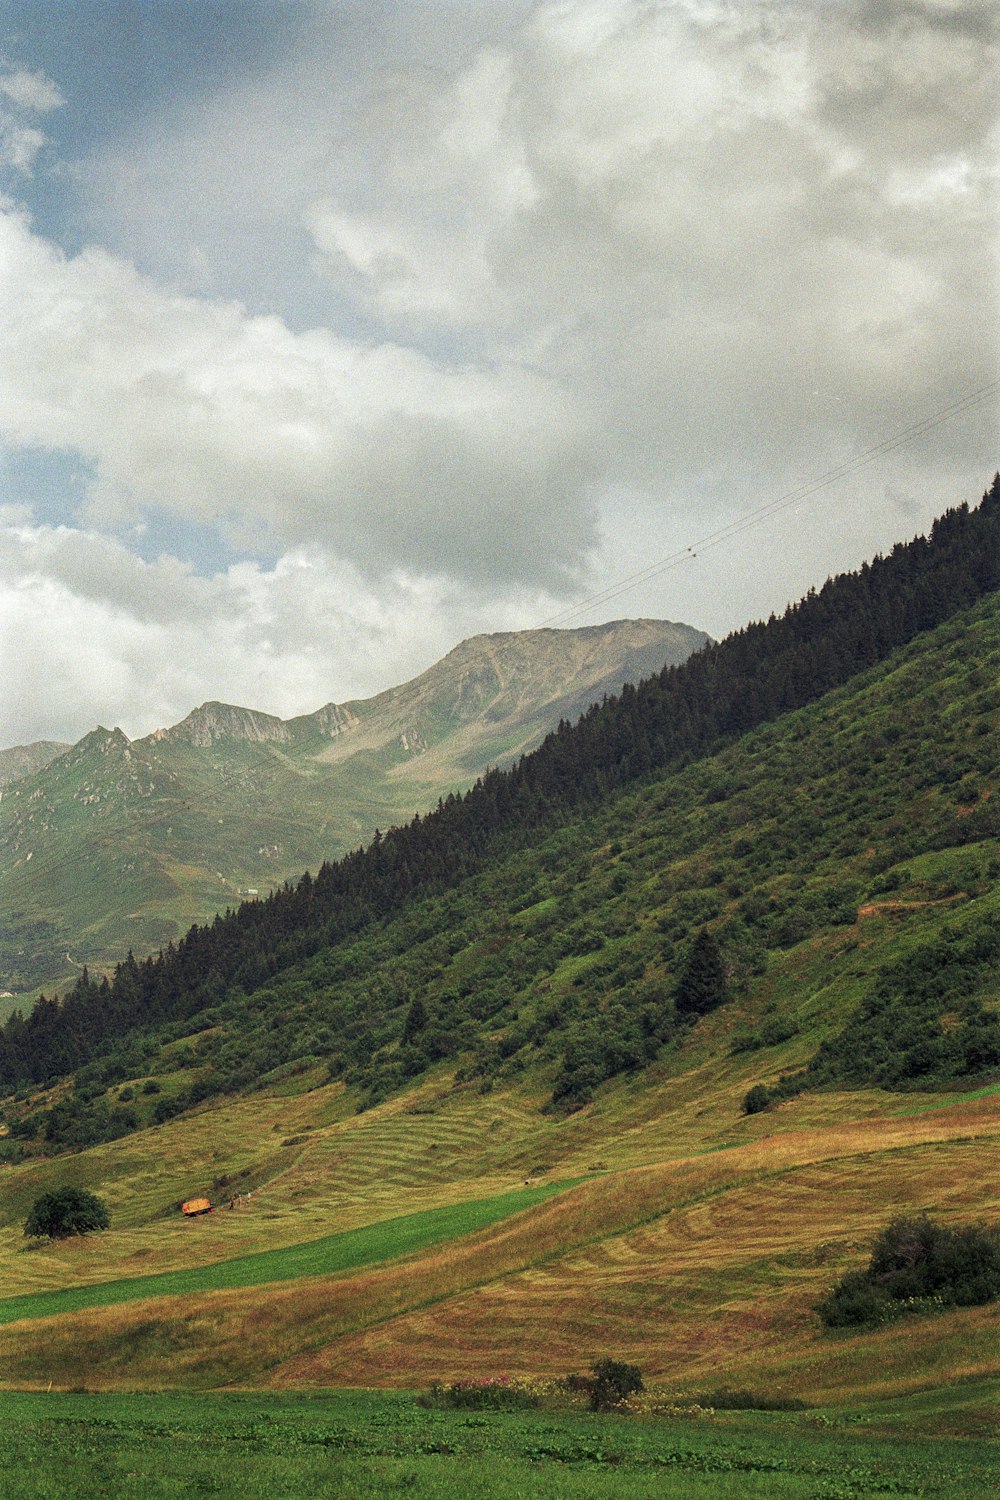 a horse grazing on a lush green hillside